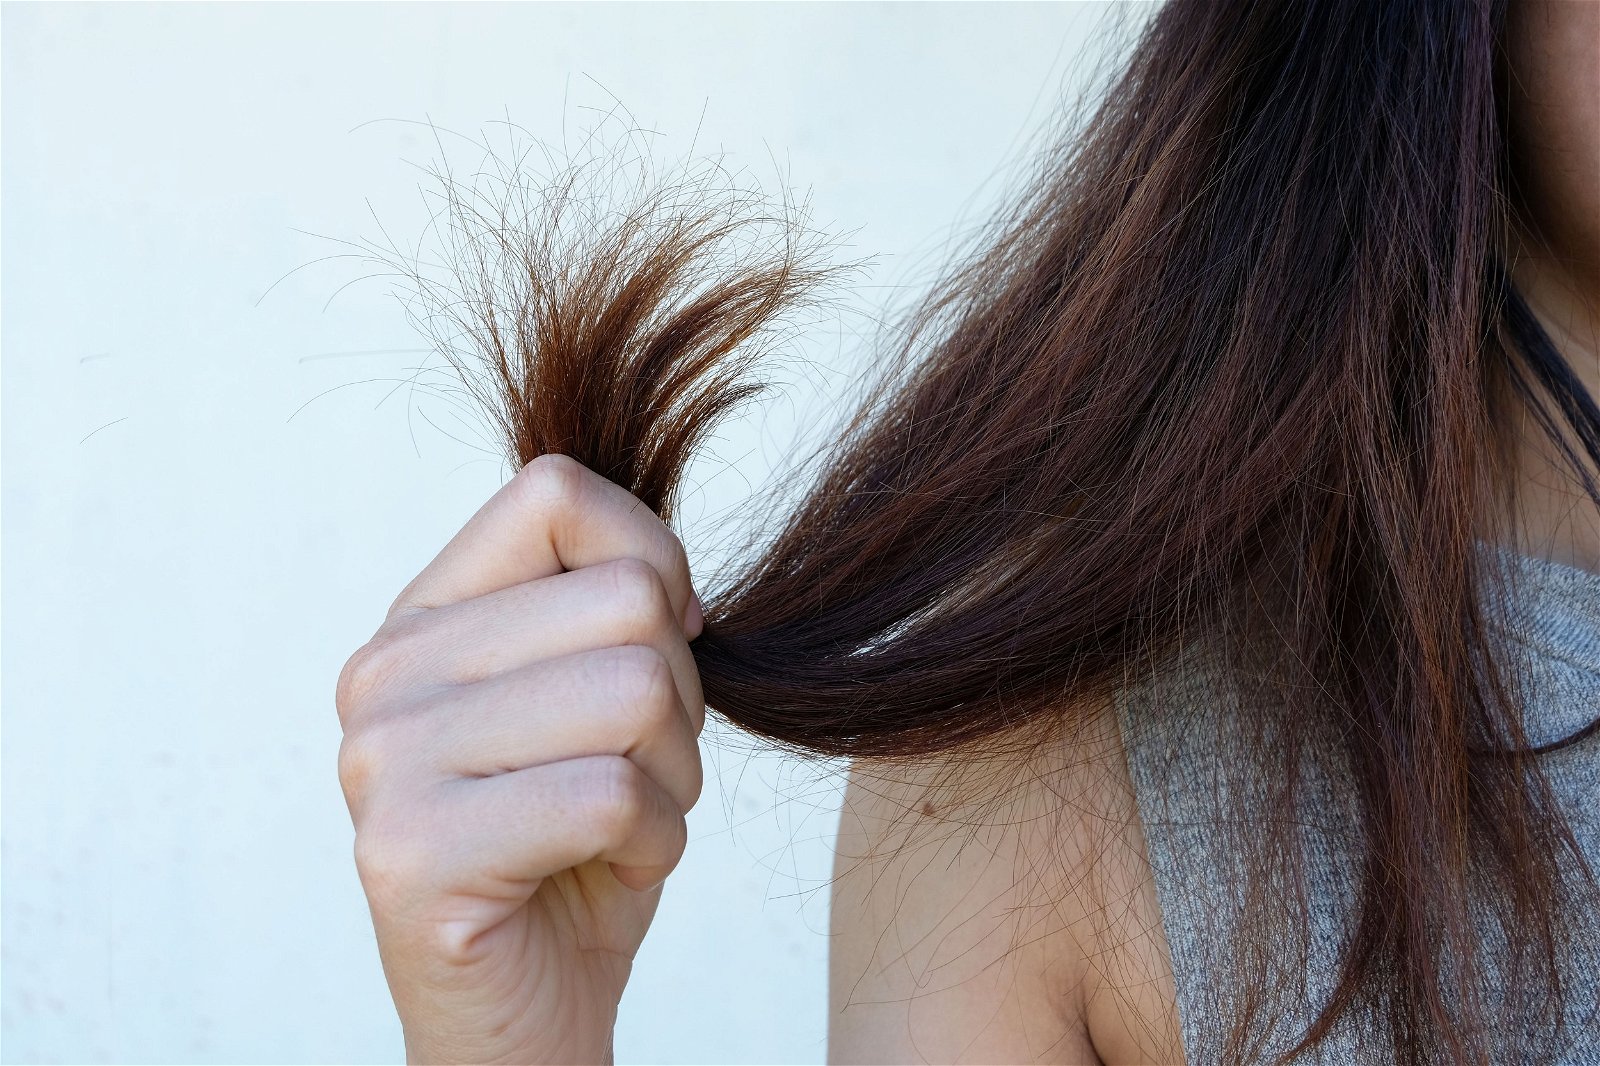 فوائد التغذية السليمة لصحة الشعر: كيف يؤثر نظامك الغذائي على جمال شعرك؟